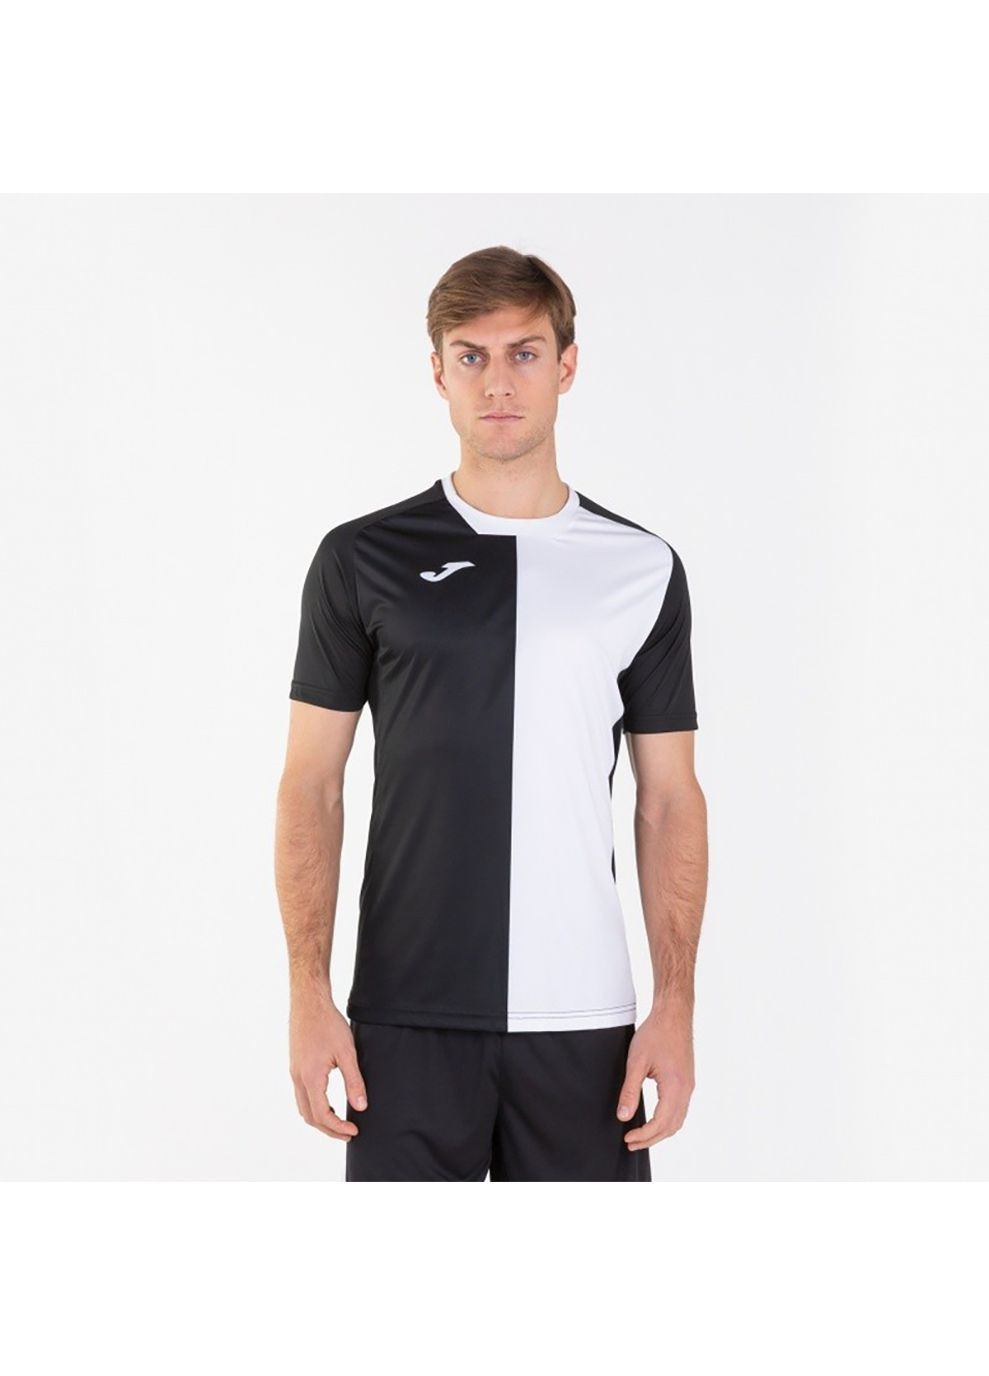 Комбінована футболка city t-shirt black-white s/s чорний,білий 101546.102 Joma